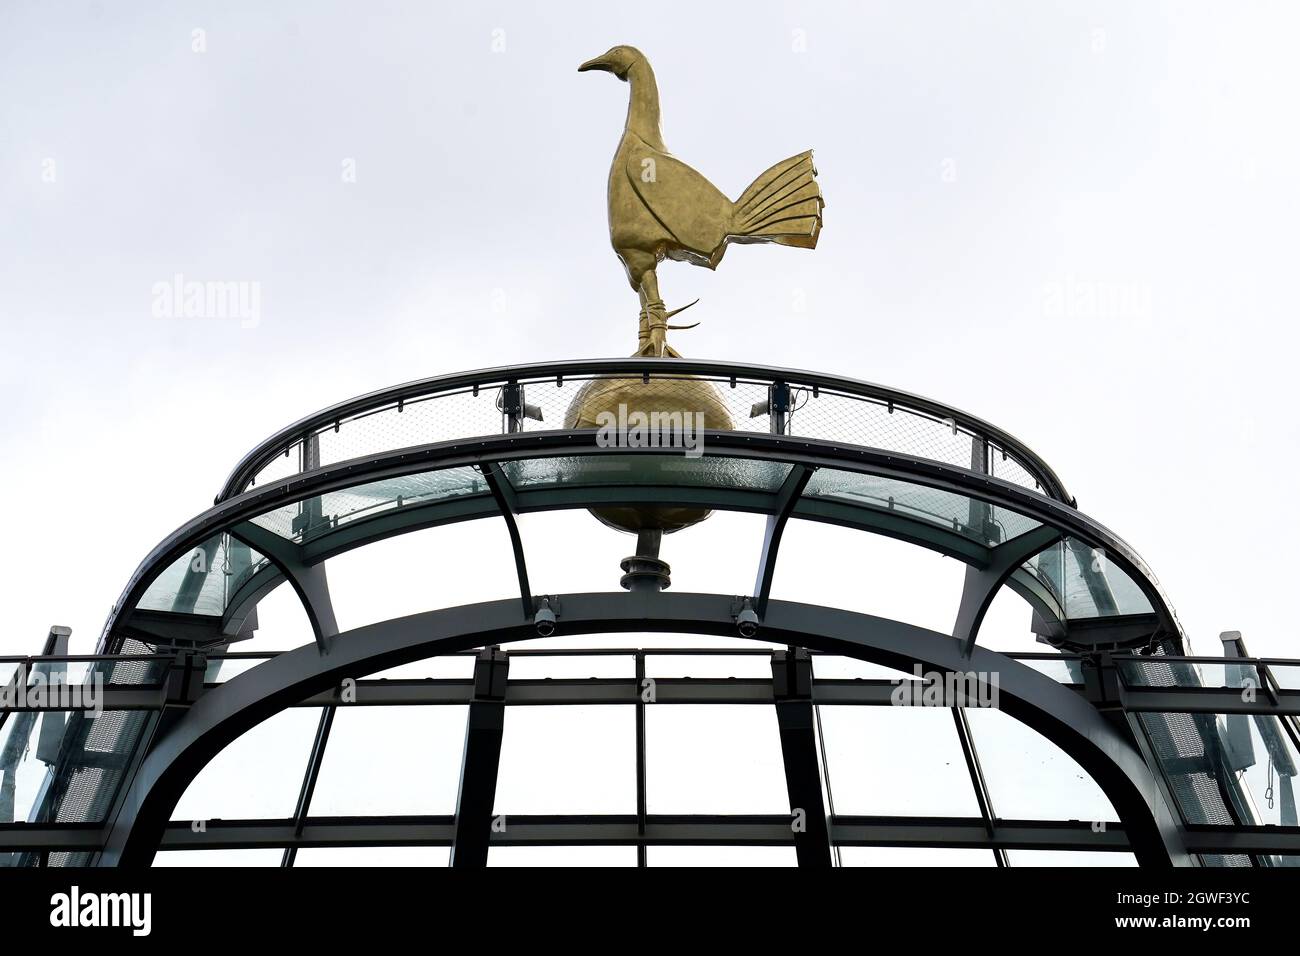 Vista generale dall'interno dello stadio del cockerel prima del calcio d'inizio durante la partita della Premier League al Tottenham Hotspur Stadium di Londra. Data foto: Domenica 3 ottobre 2021. Foto Stock